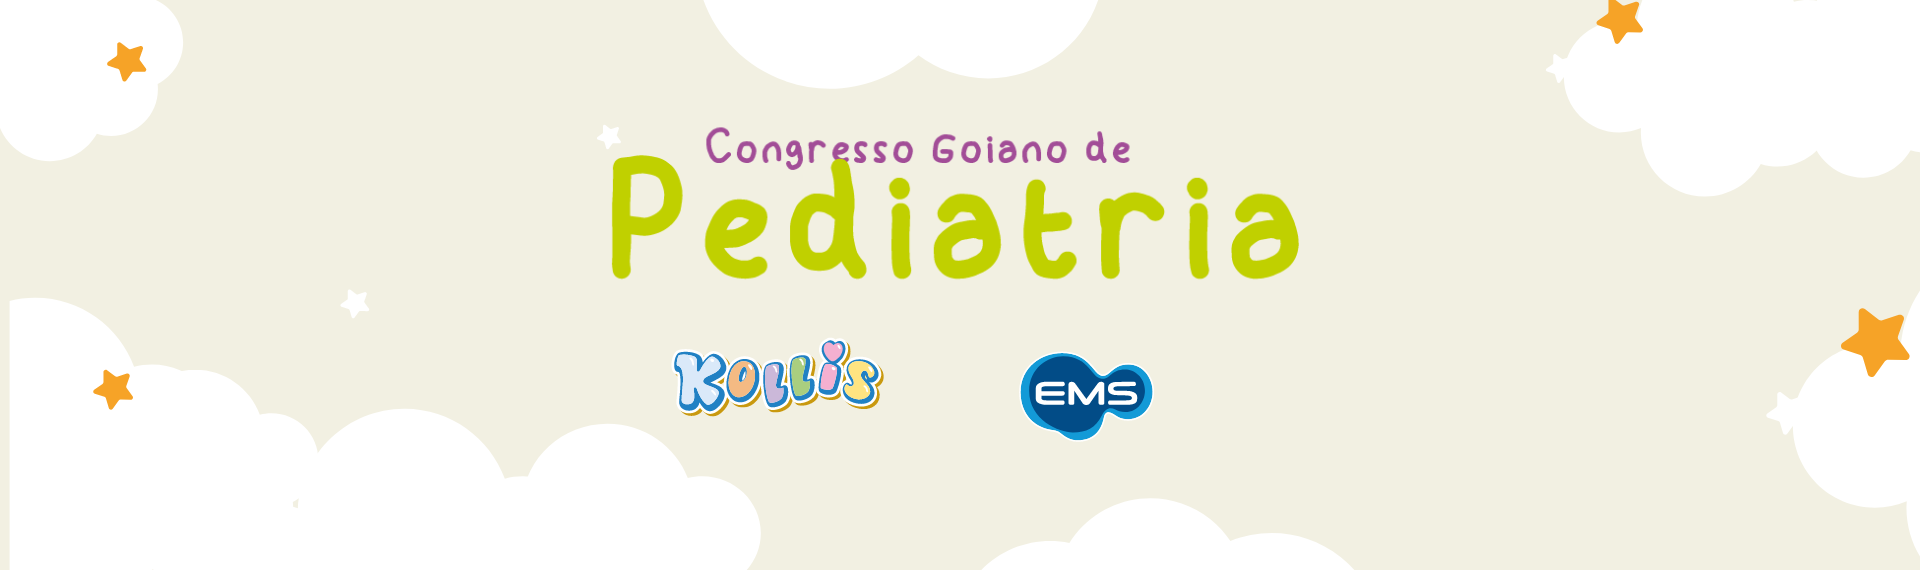 Congresso Criar - Goiano de Pediatria - Médico Exponencial EMS